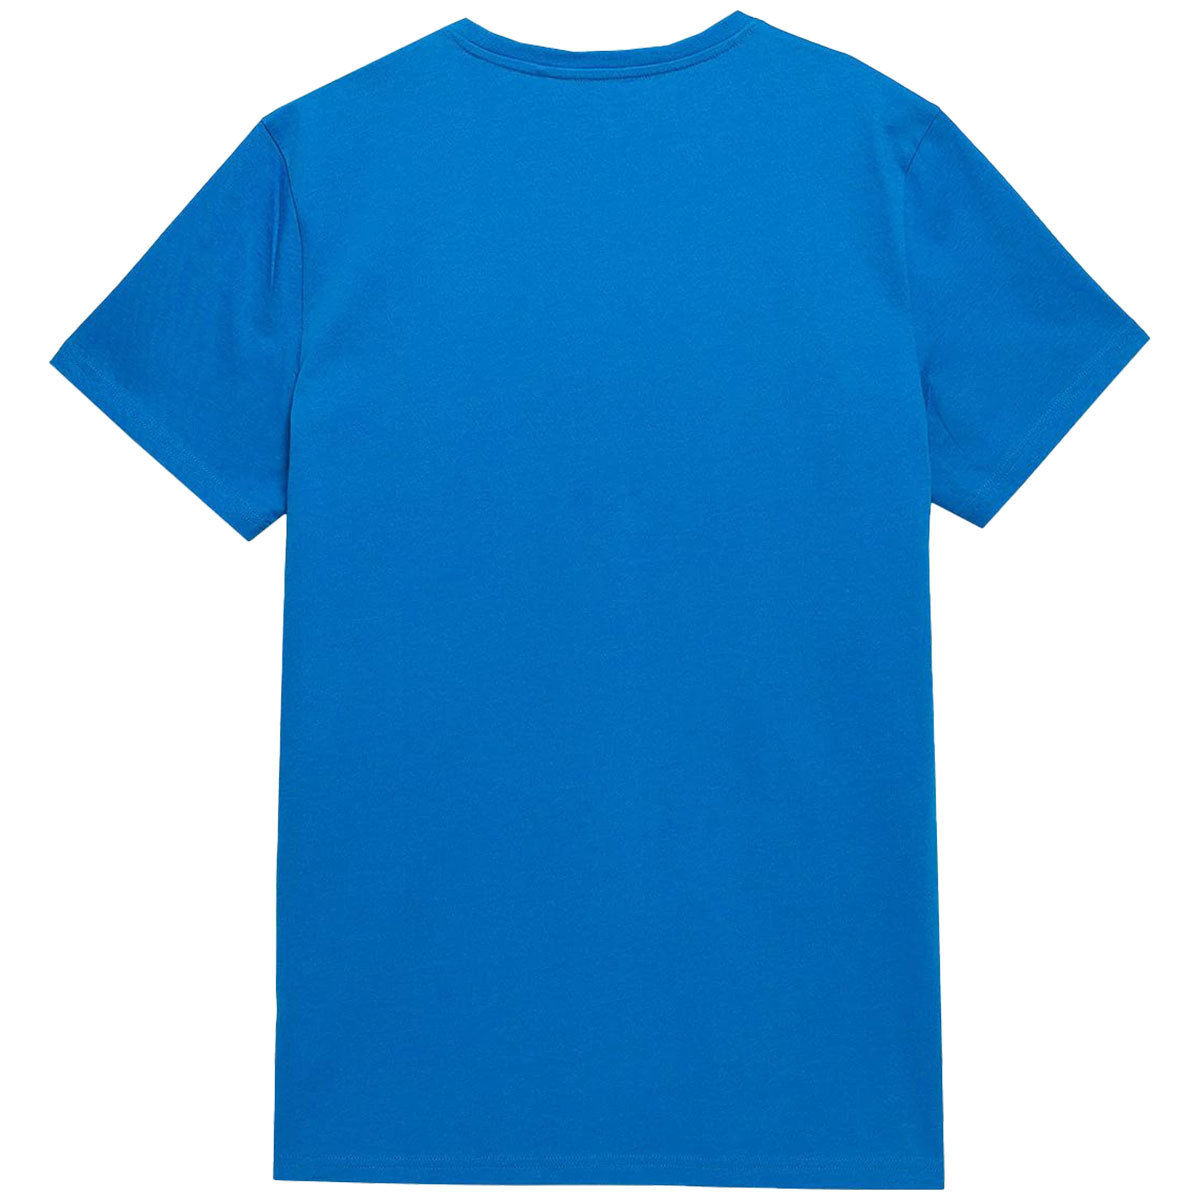 Футболка T-shirt 4F TTSHM536 Біла/Глибокий Чорний/Denim/Світло-сіра/Синя - 5 шт.